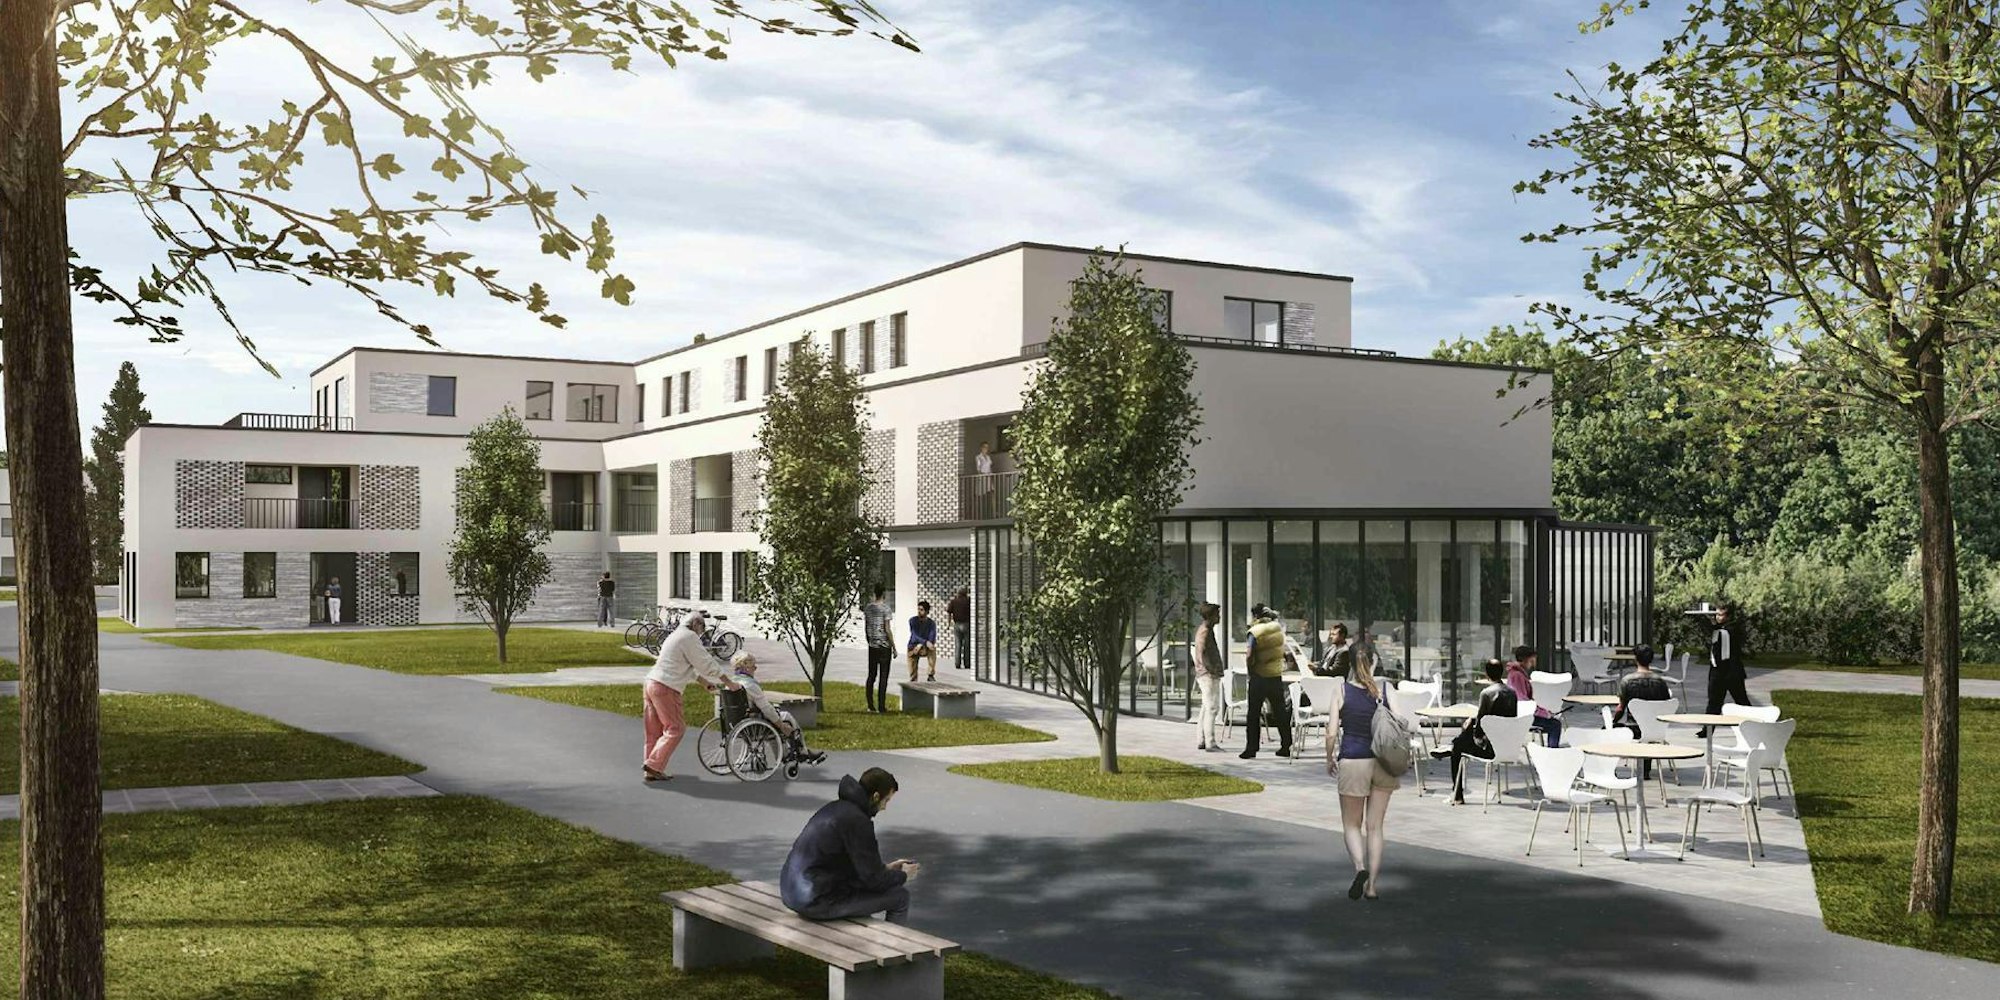 Im Abteiort möchte die Bauen für Menschen GmbH eine inklusives Wohnquartier bauen.